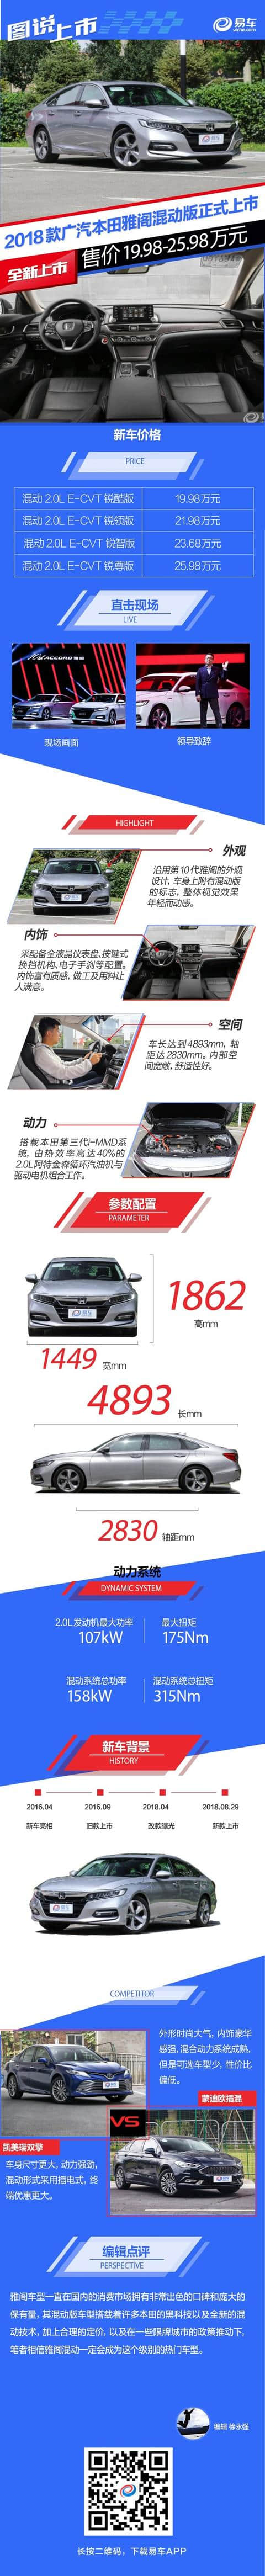 本田雅阁混动版正式上市 售价19.98-25.98万元/推4款车型